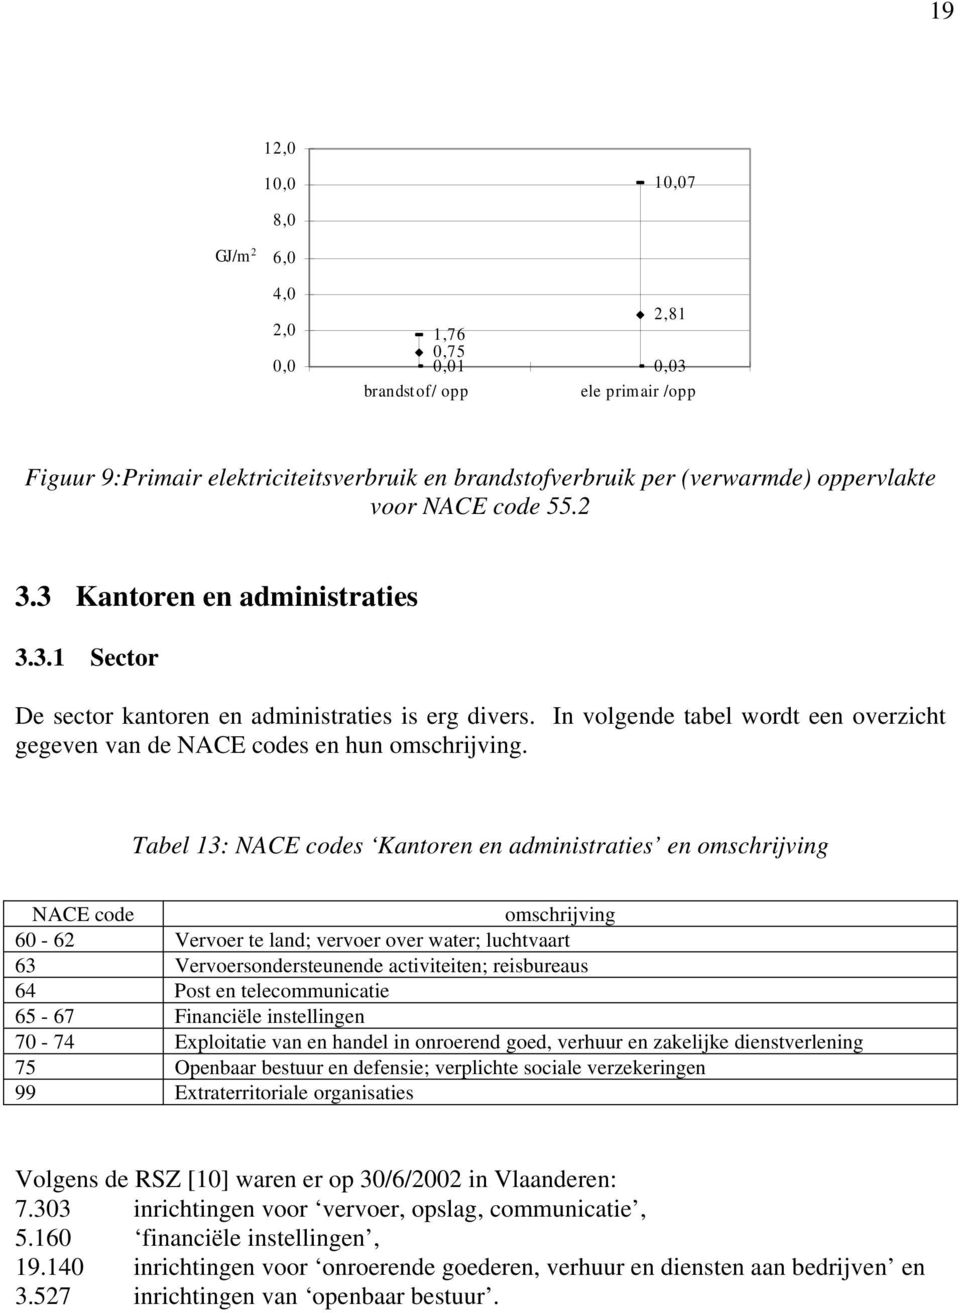 Tabel 13: NACE codes Kantoren en administraties en omschrijving NACE code omschrijving 60-62 Vervoer te land; vervoer over water; luchtvaart 63 Vervoersondersteunende activiteiten; reisbureaus 64